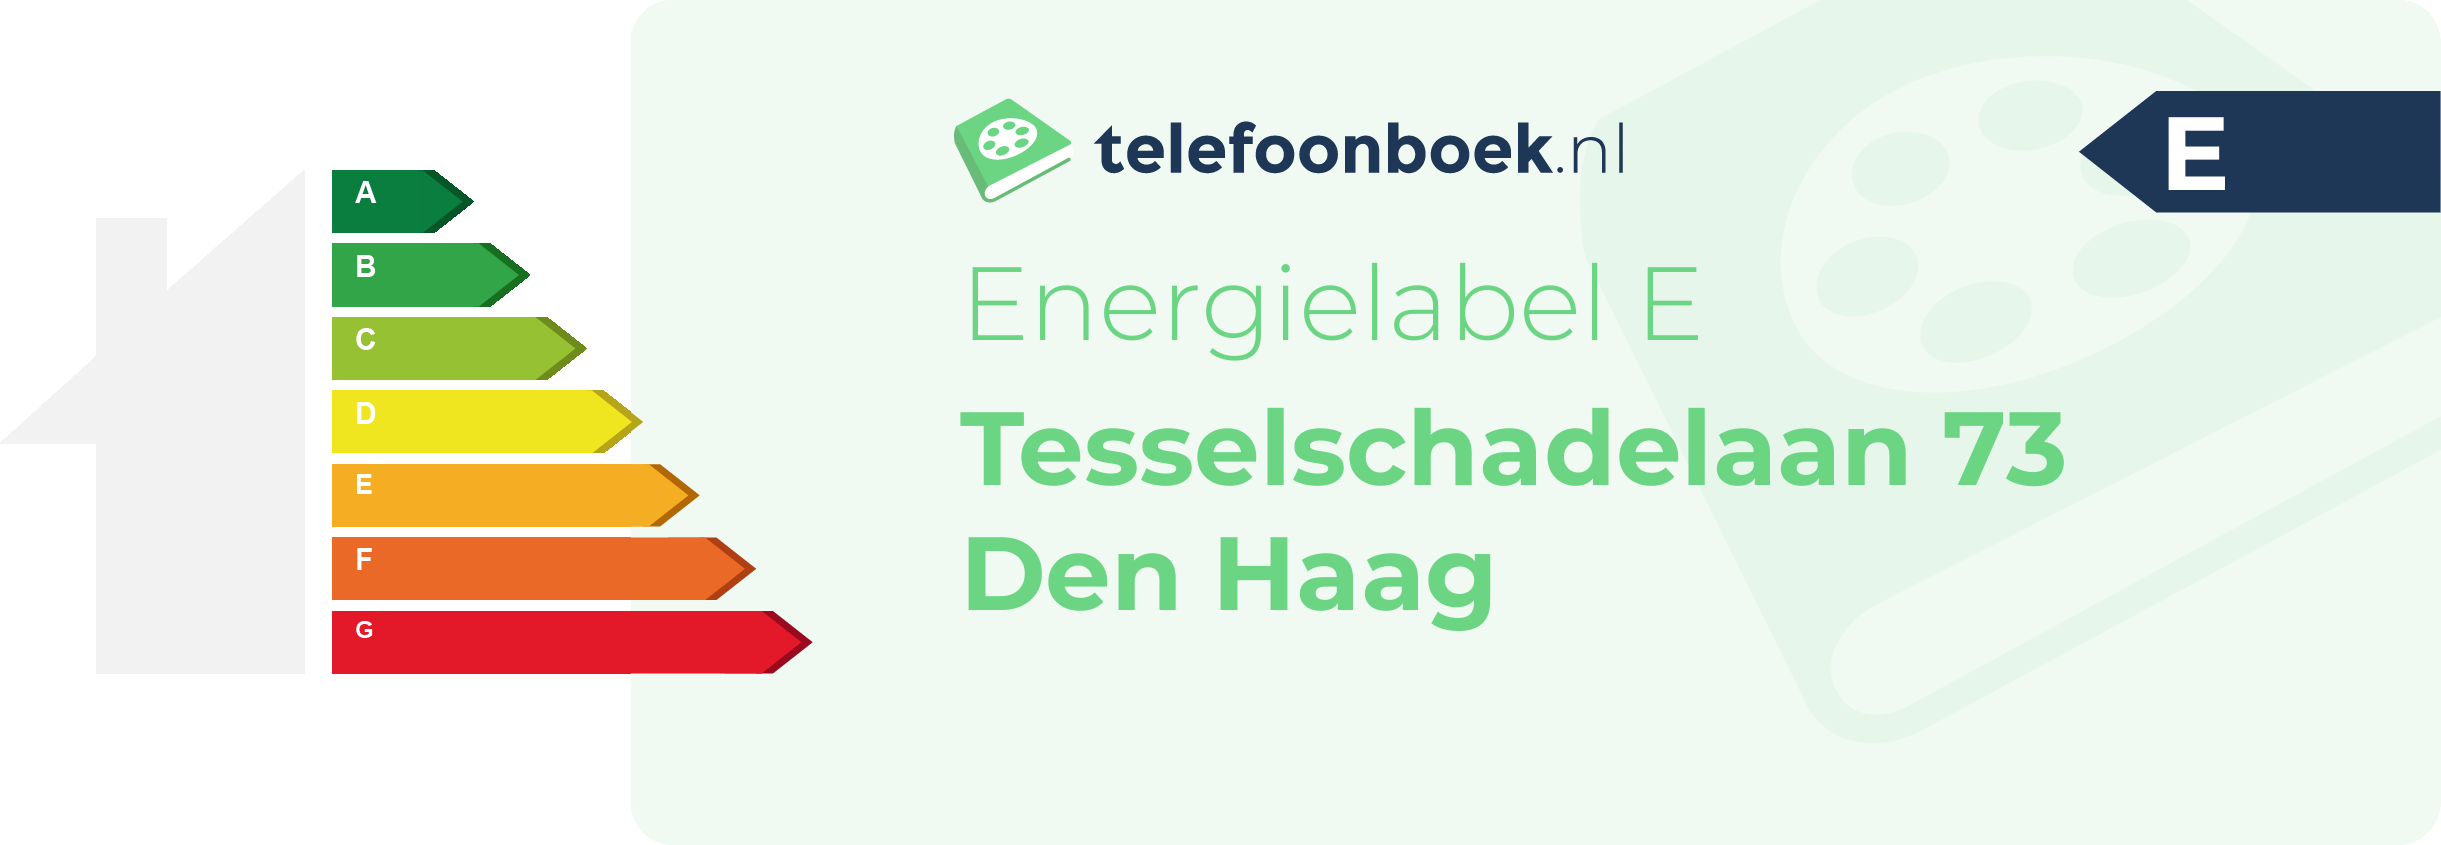 Energielabel Tesselschadelaan 73 Den Haag